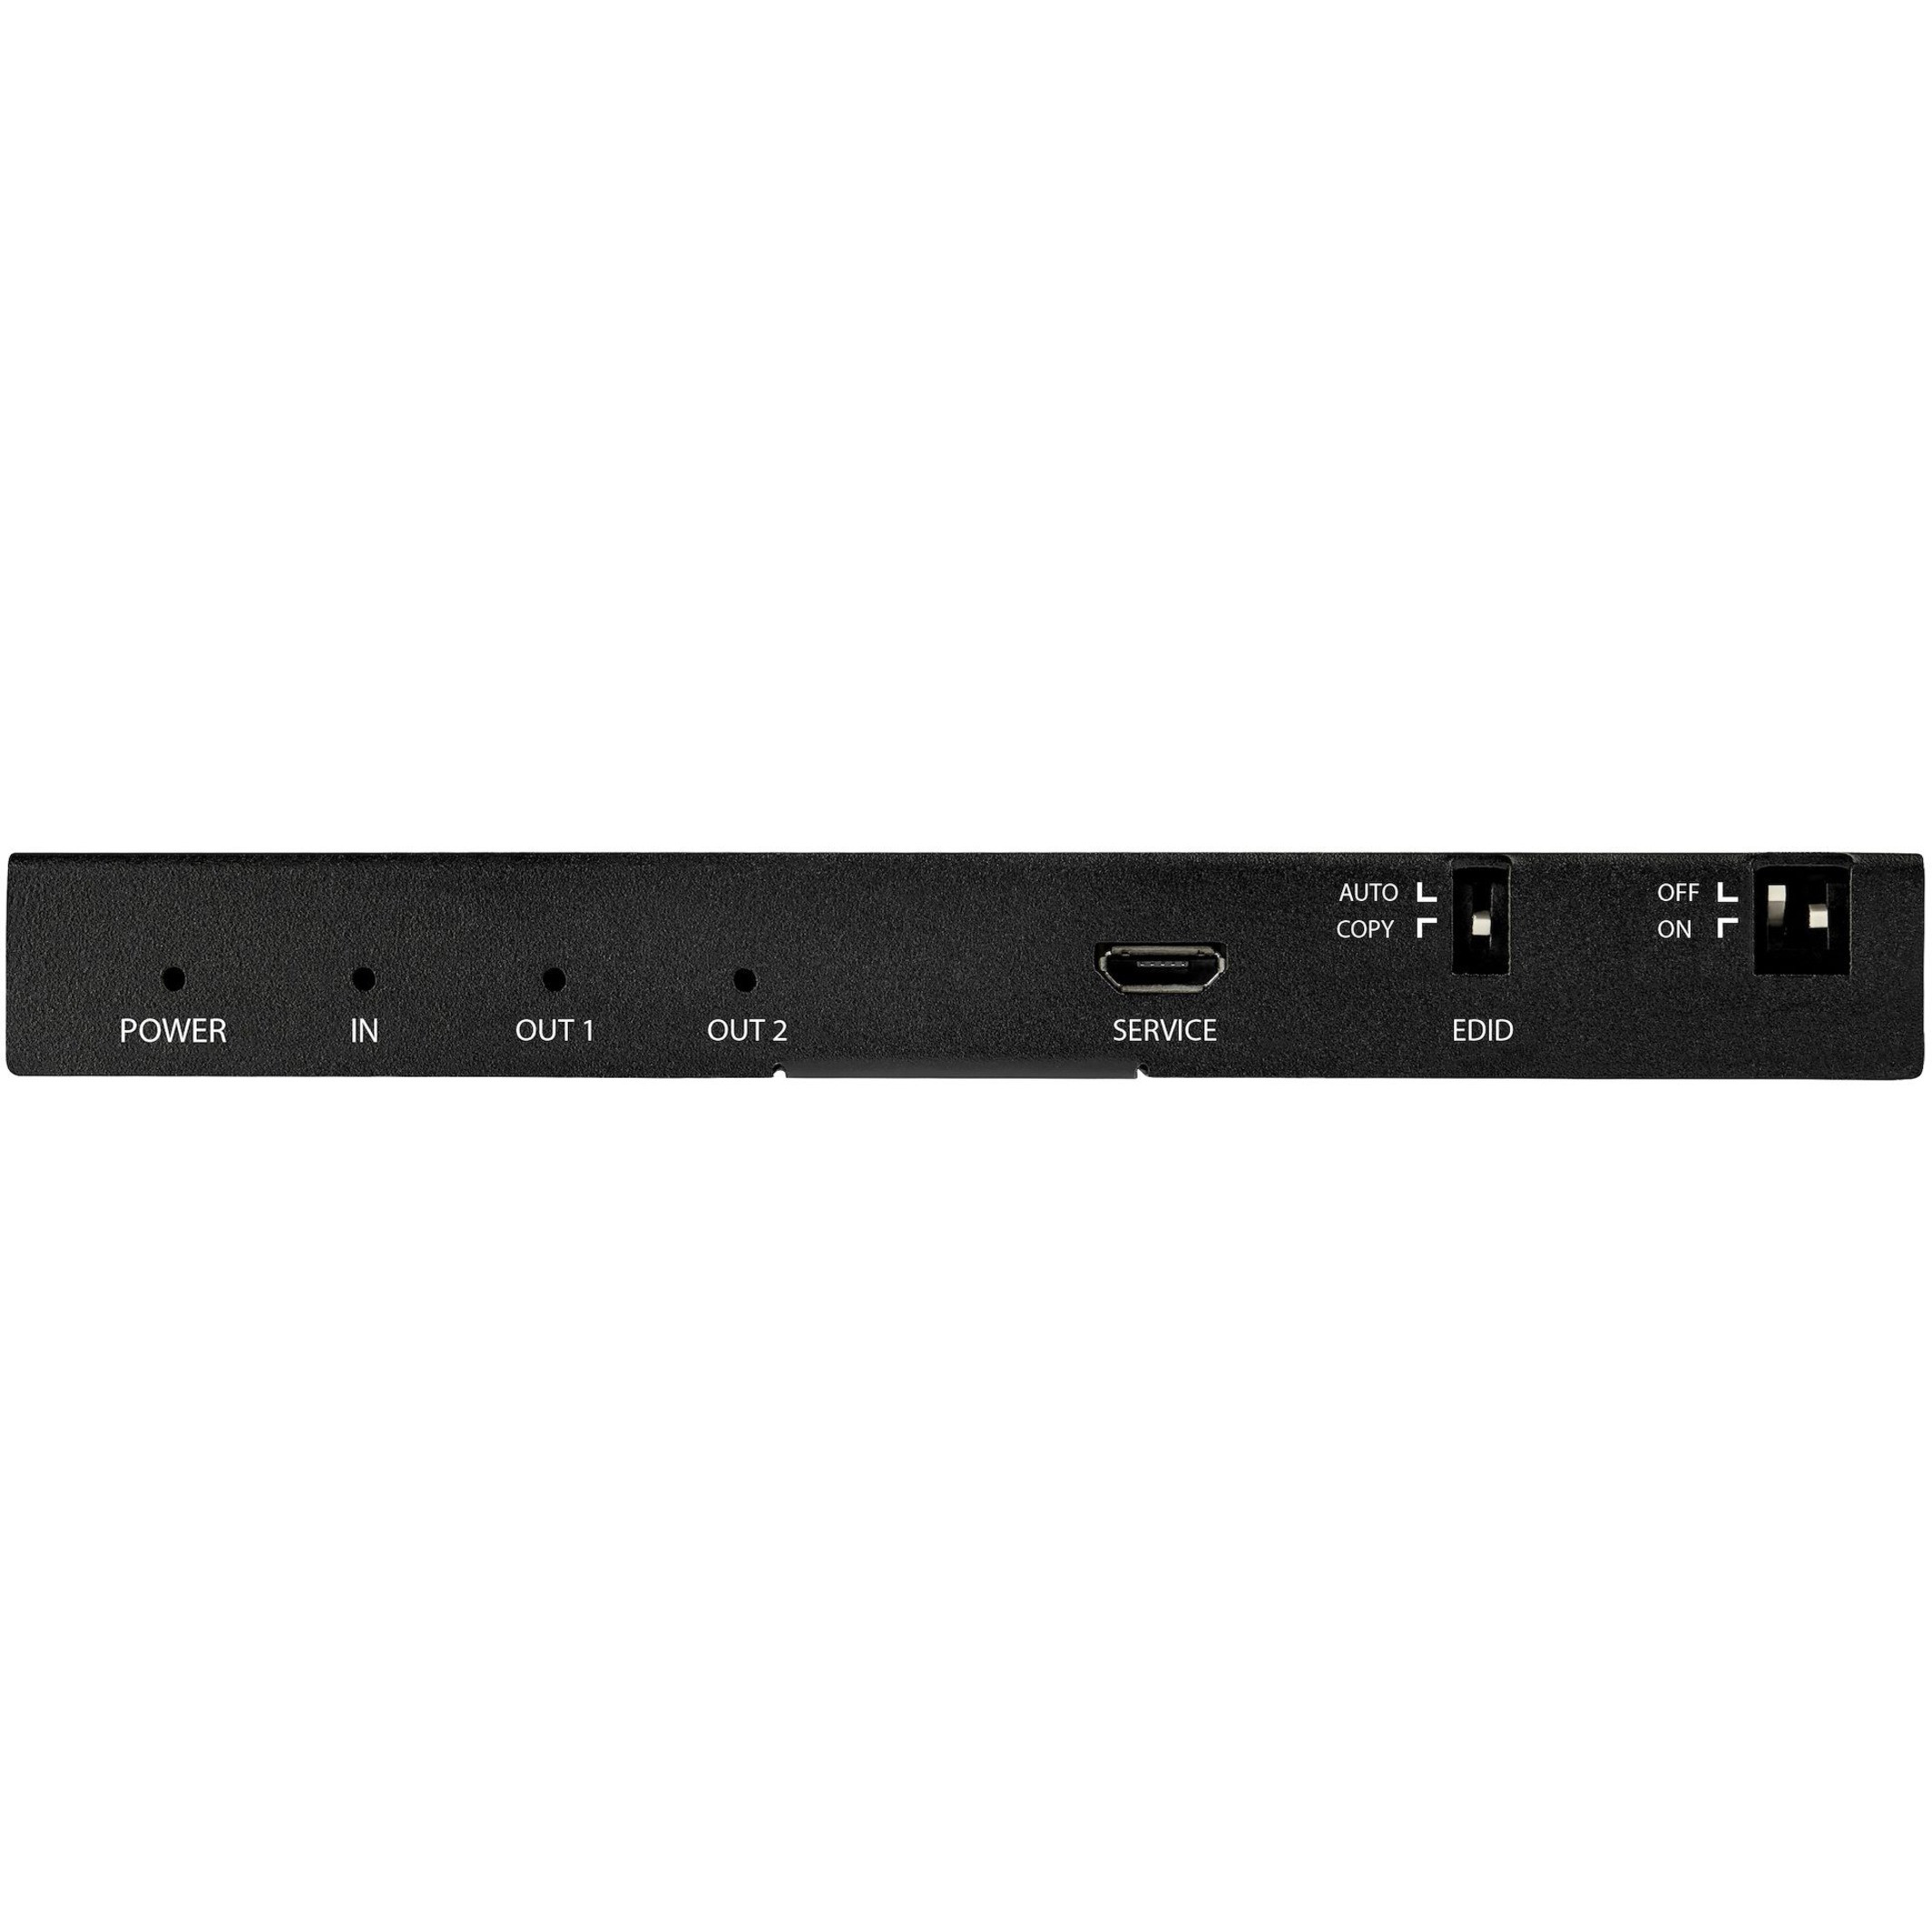 StarTech.com HDMI Splitter - 2-Port - 4K 60Hz - HDMI Splitter 1 In 2 Out -  2 Way HDMI Splitter - HDMI Port Splitter